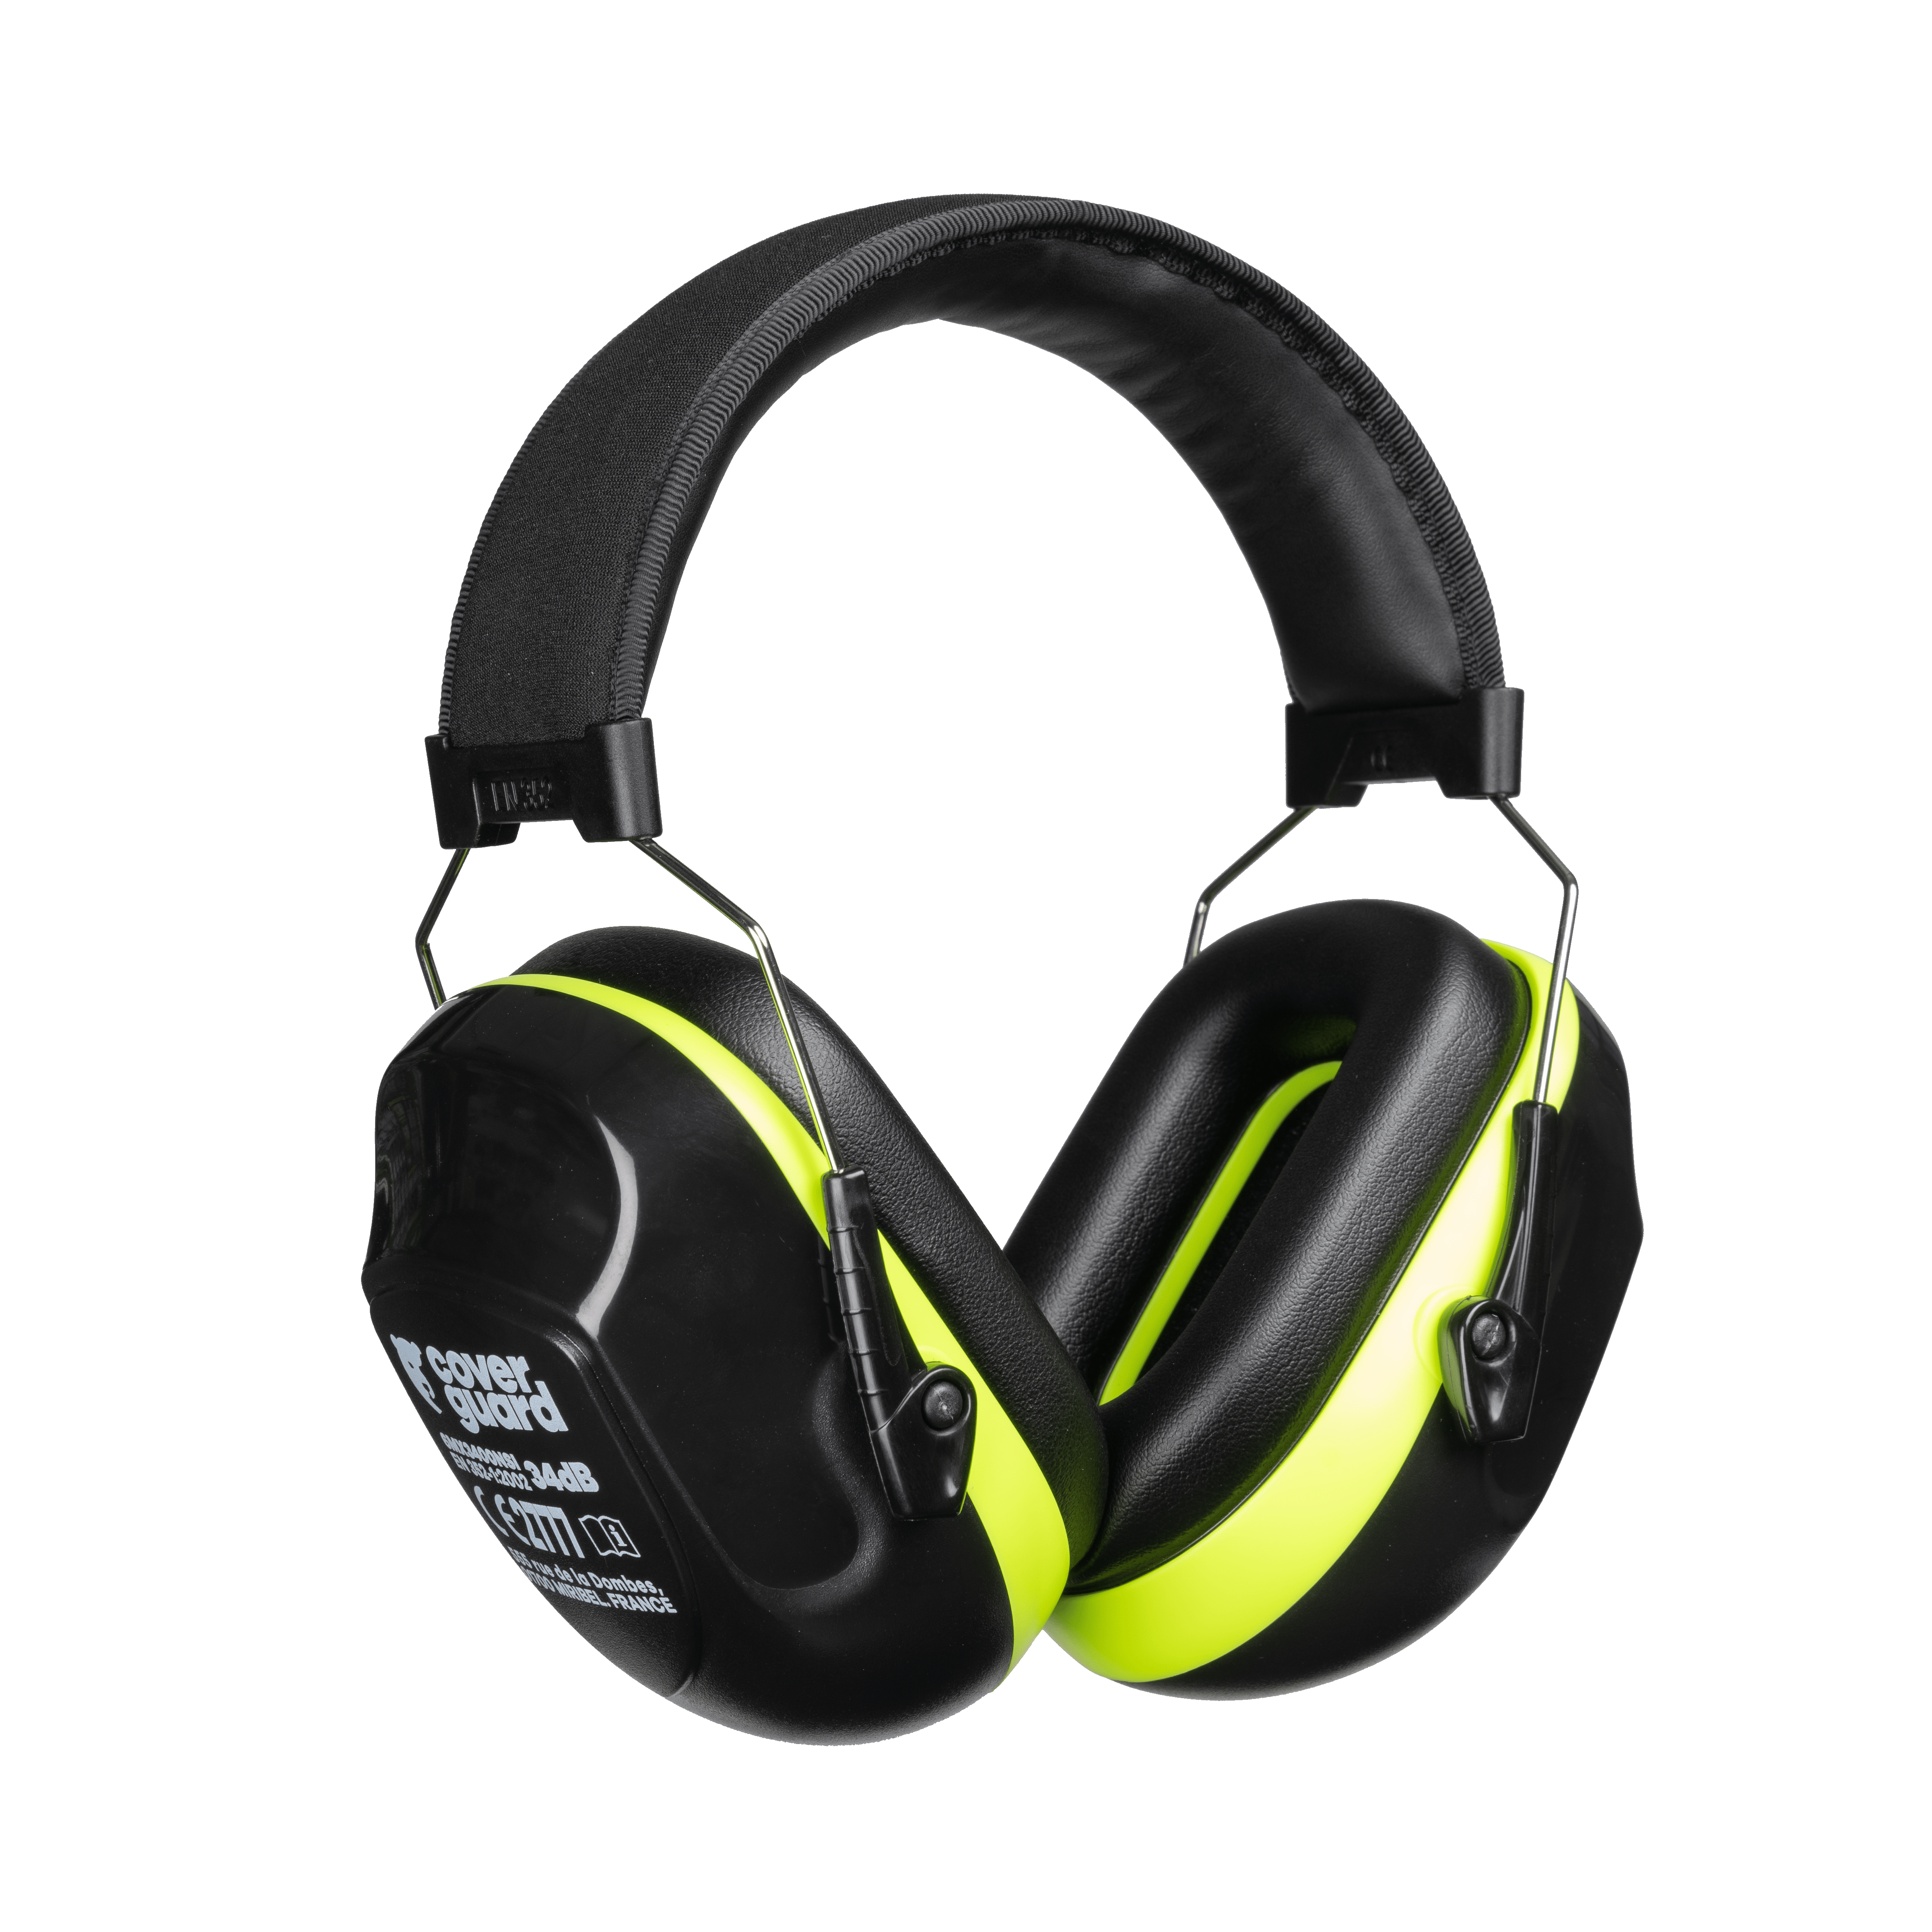 Coverguard - Casques anti-bruit électroniques MAX 800 31Db (Pack